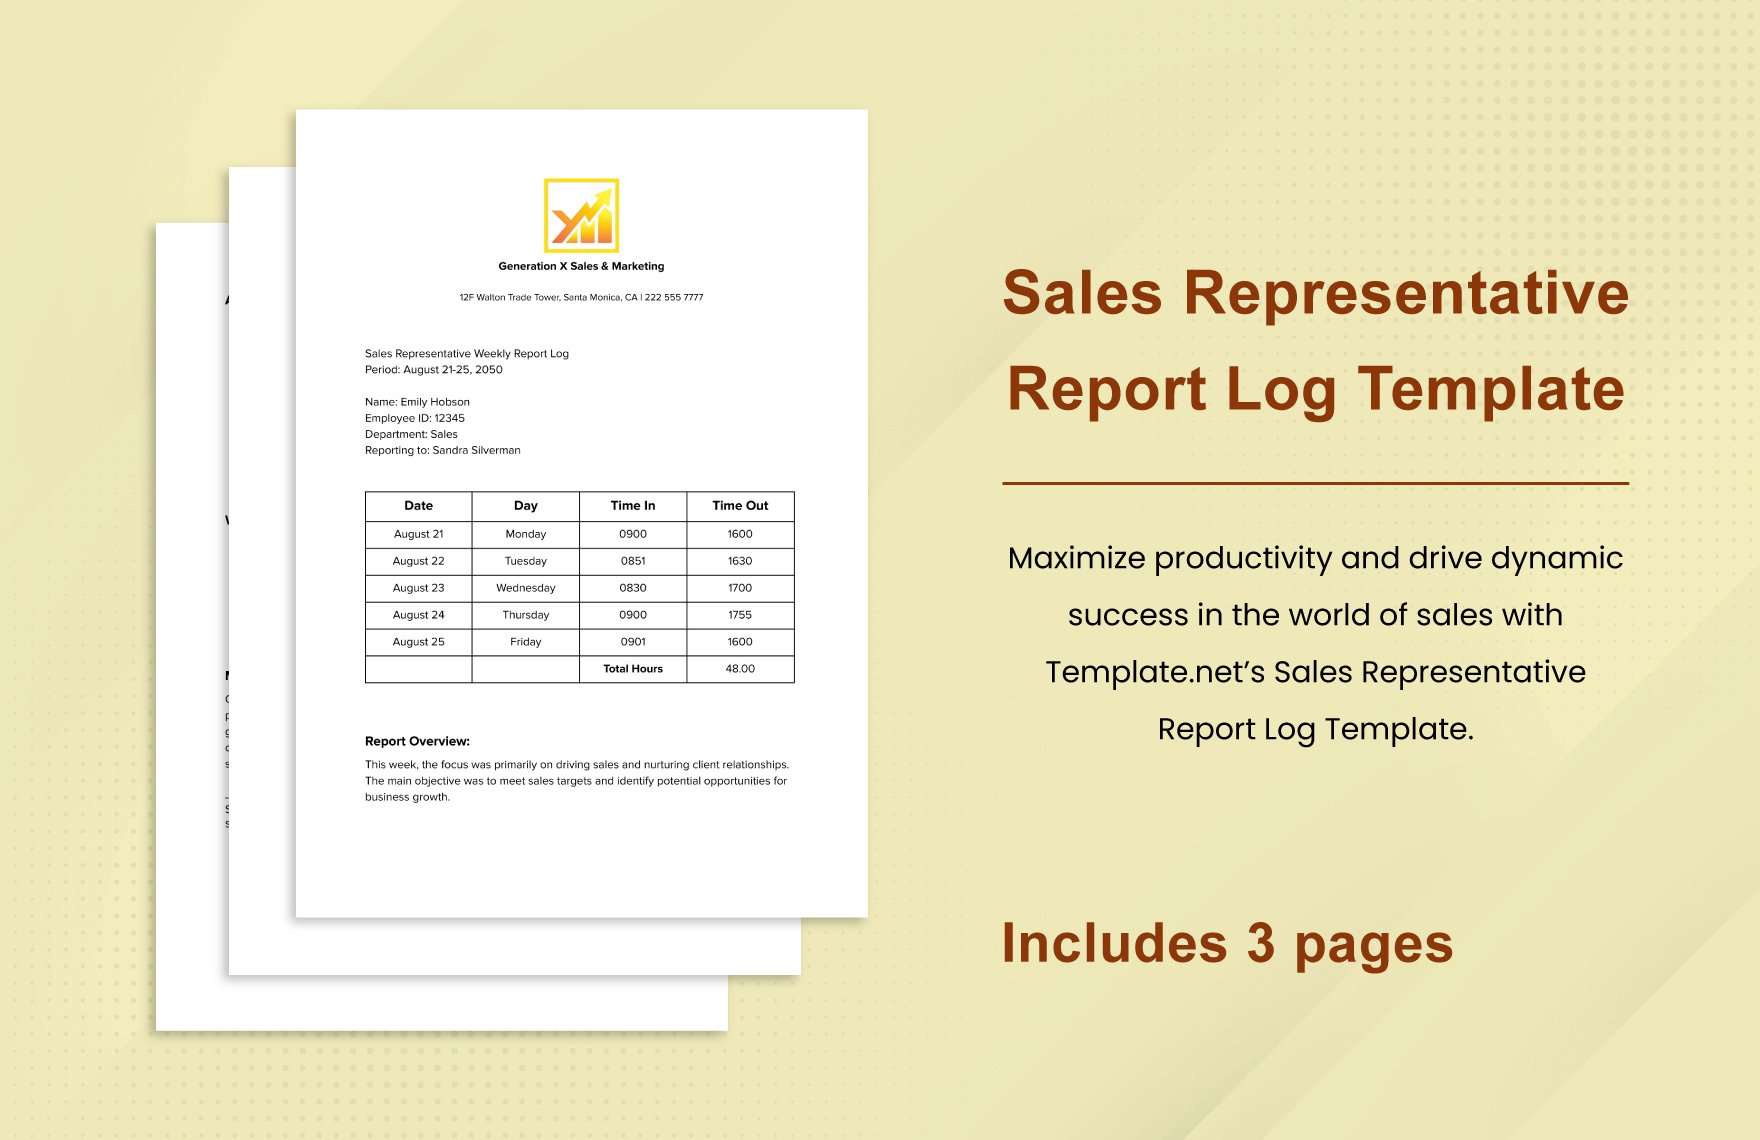 Sales Representative Report Log Template